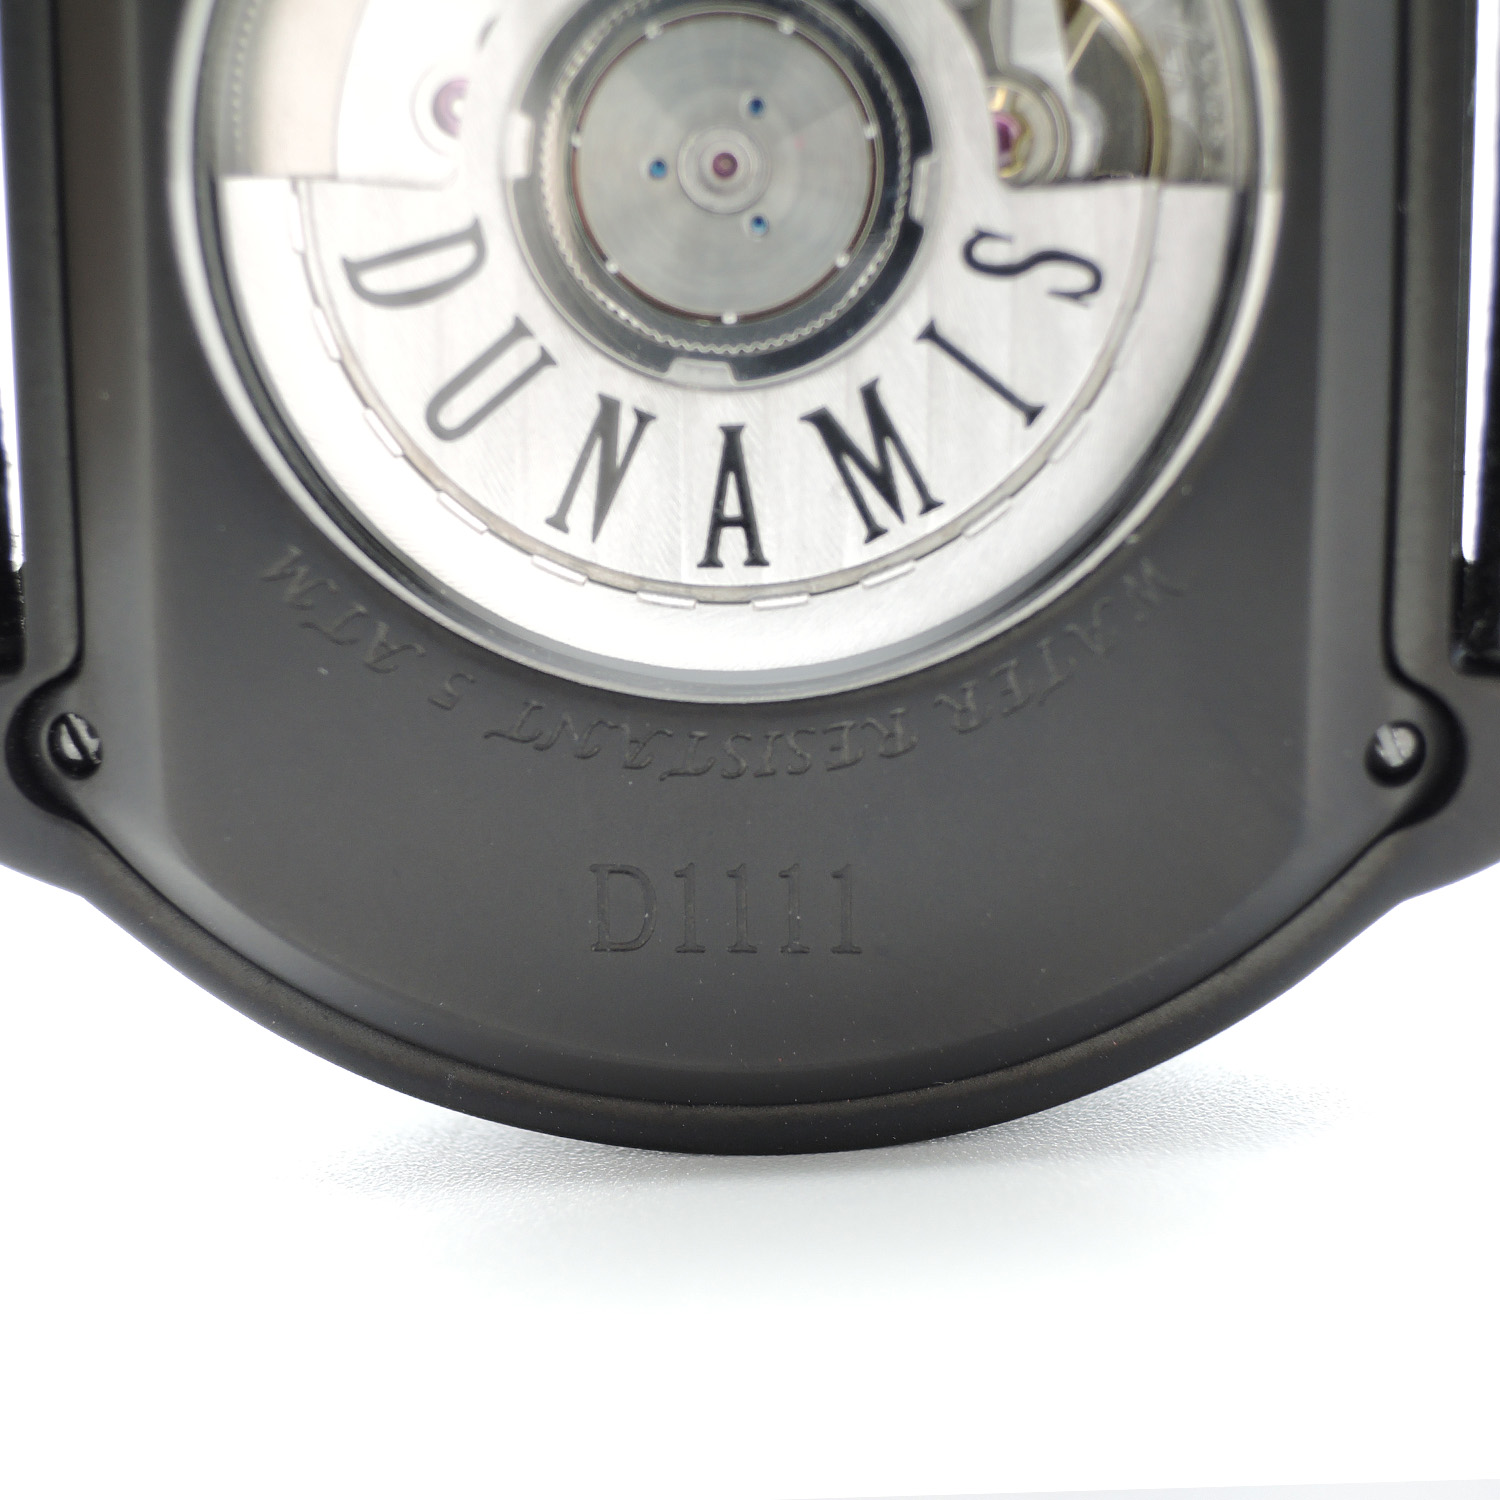 デュナミス スパルタン ヘラクレス SP-B15 レア シリアル 1111 ブラック ダイヤモンド 保証付き時計 CP10748のイメージ画像